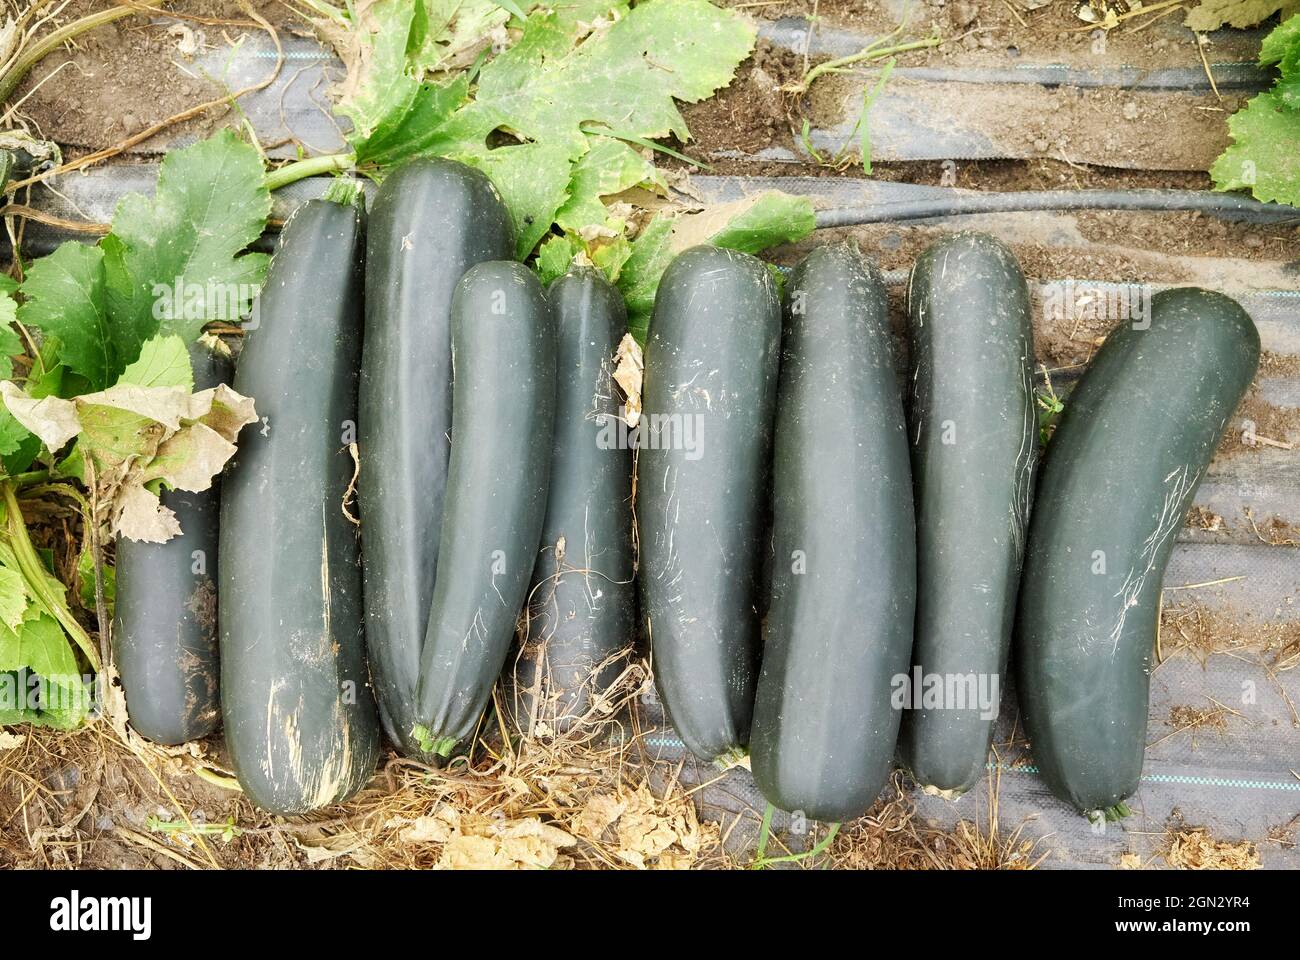 Zucchine biologiche su una superficie di serra. Foto Stock